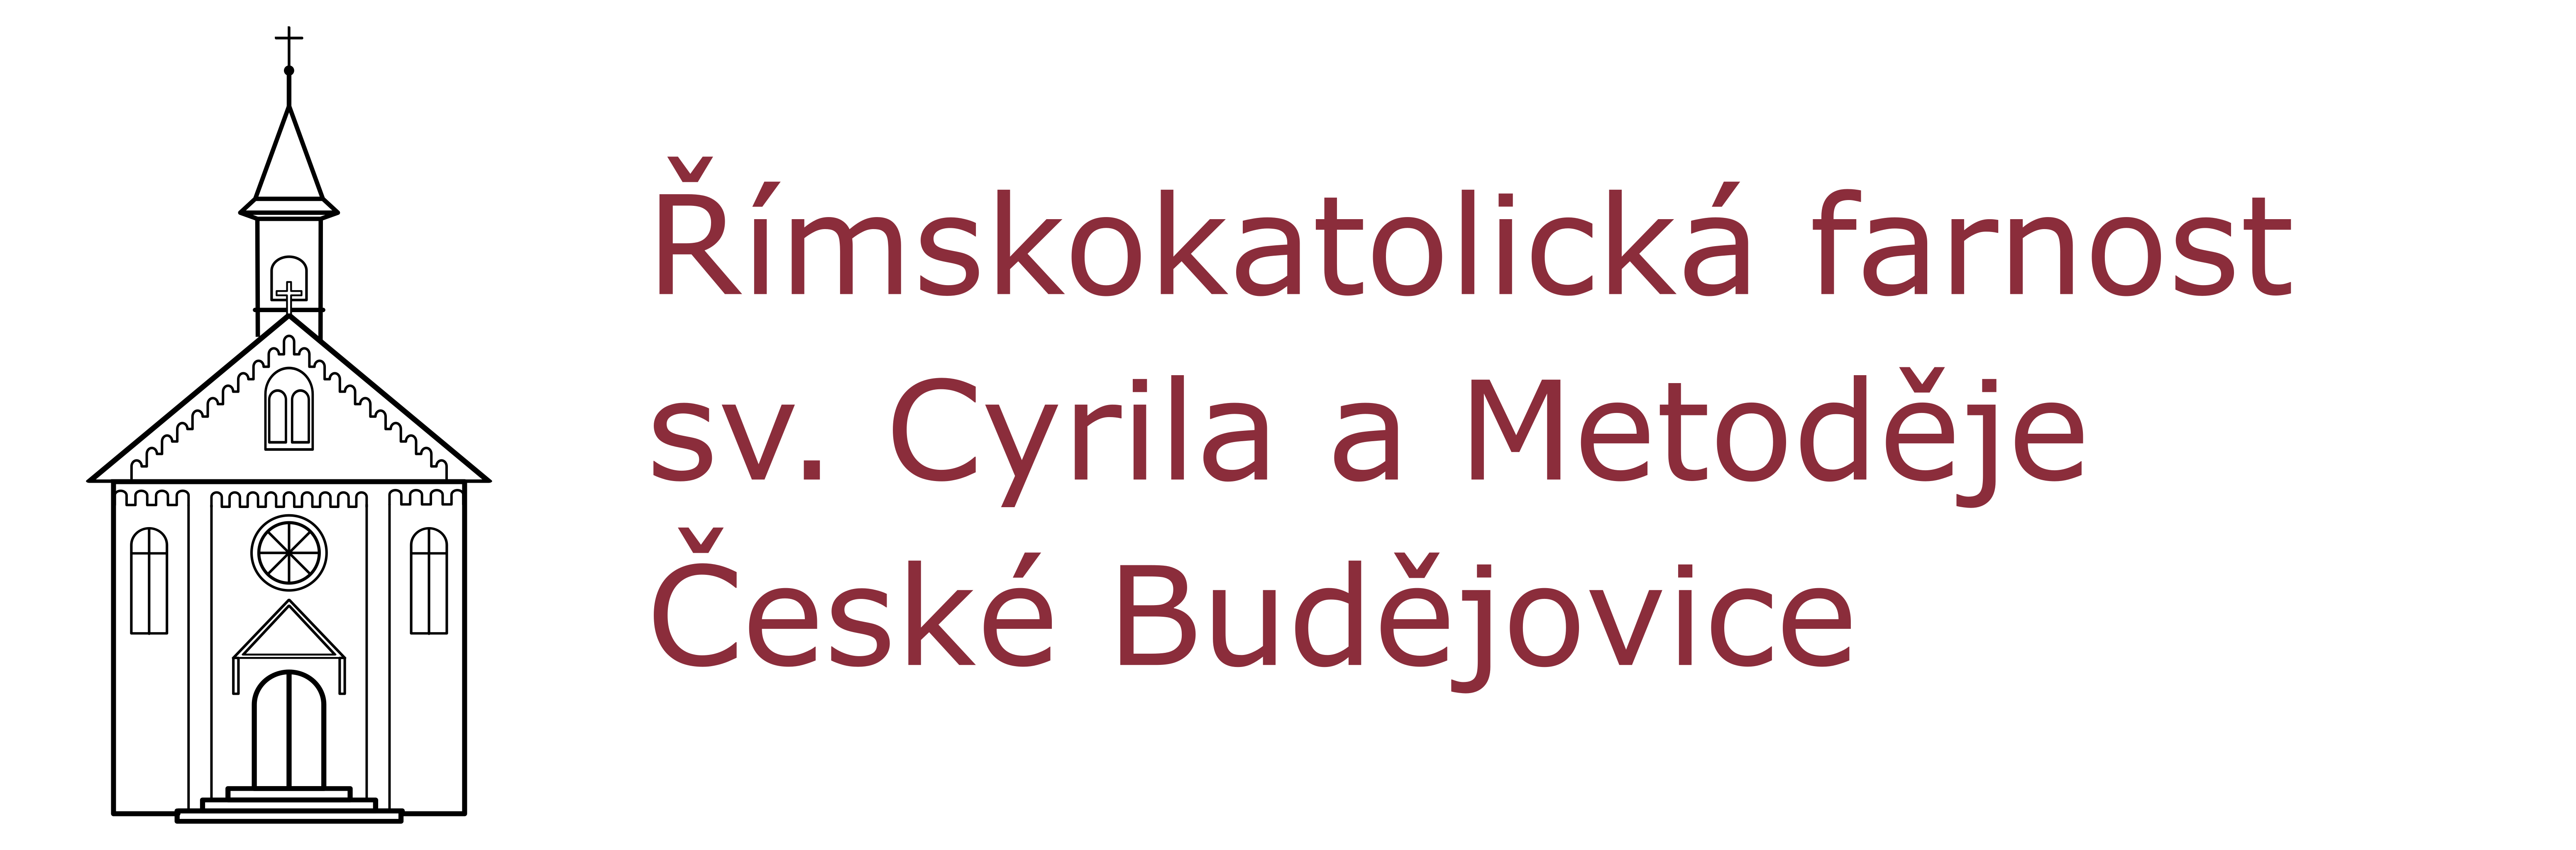 Logo Římskokatolická farnost sv. Cyrila a Metoděje České Budějovice - Suché Vrbné